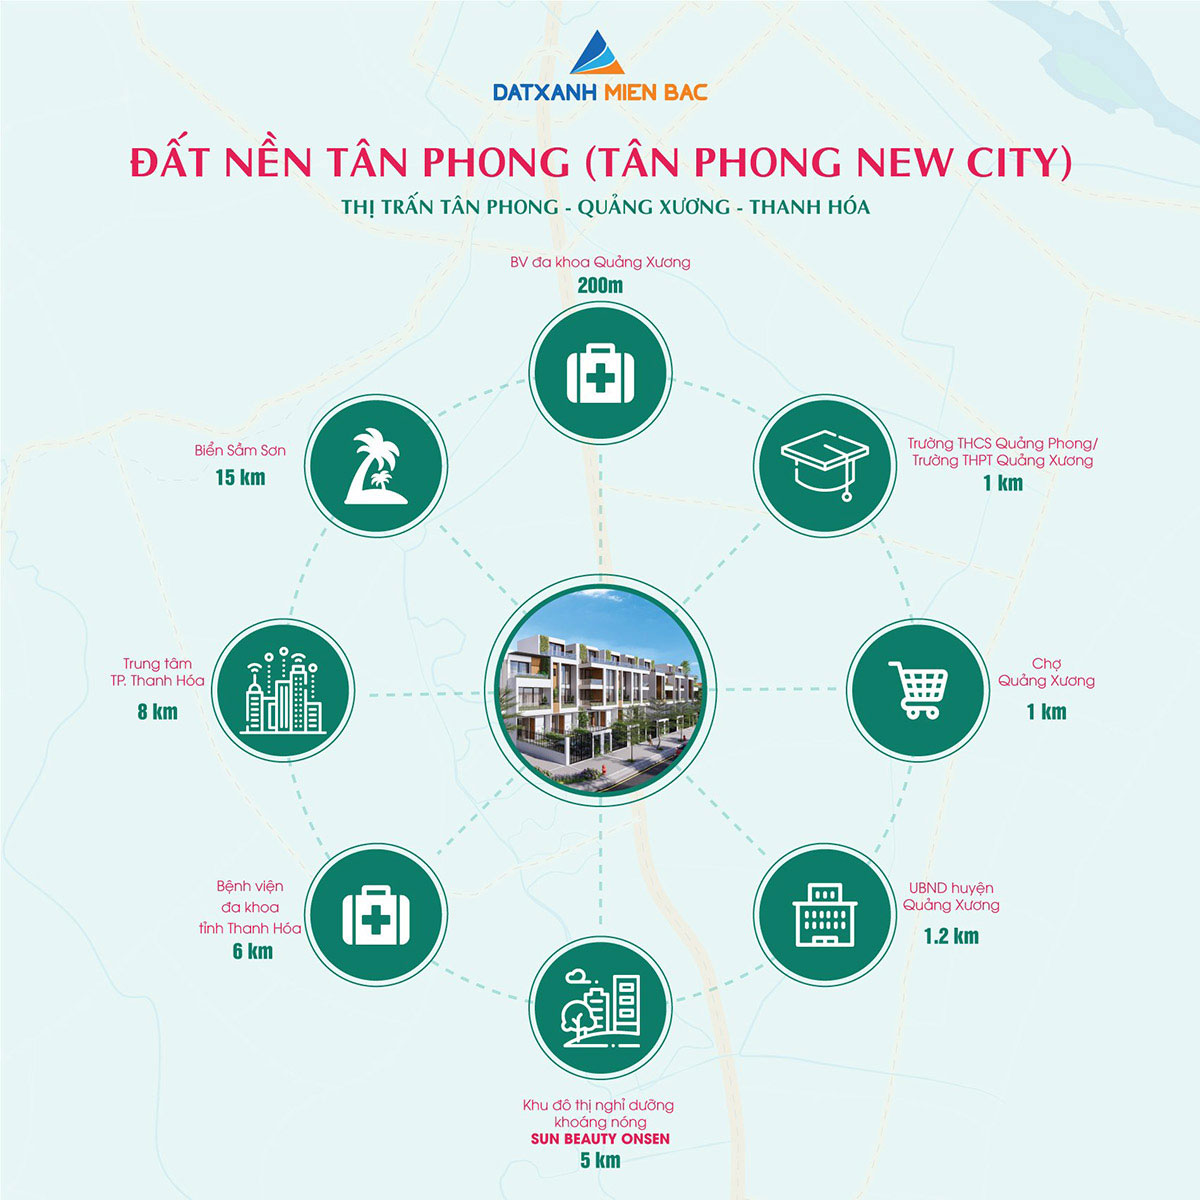 Tân Phong New City